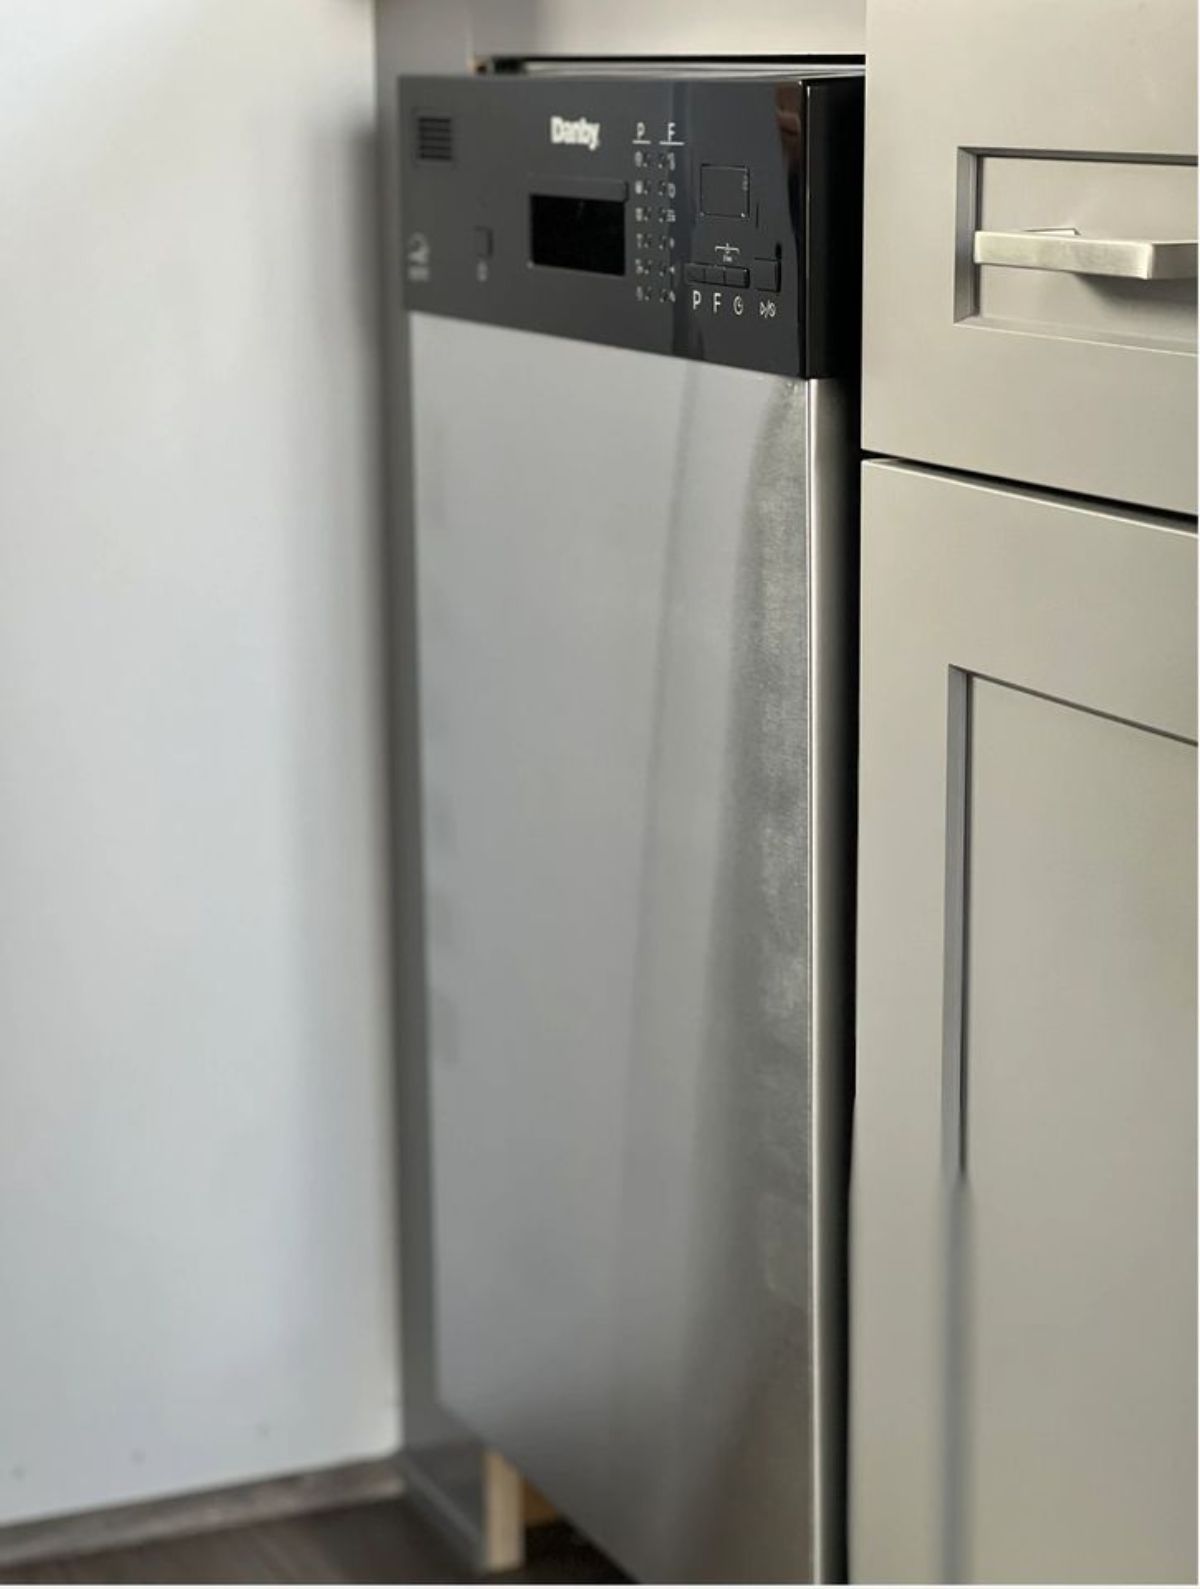 stainless steel  dishwasher in kitchen